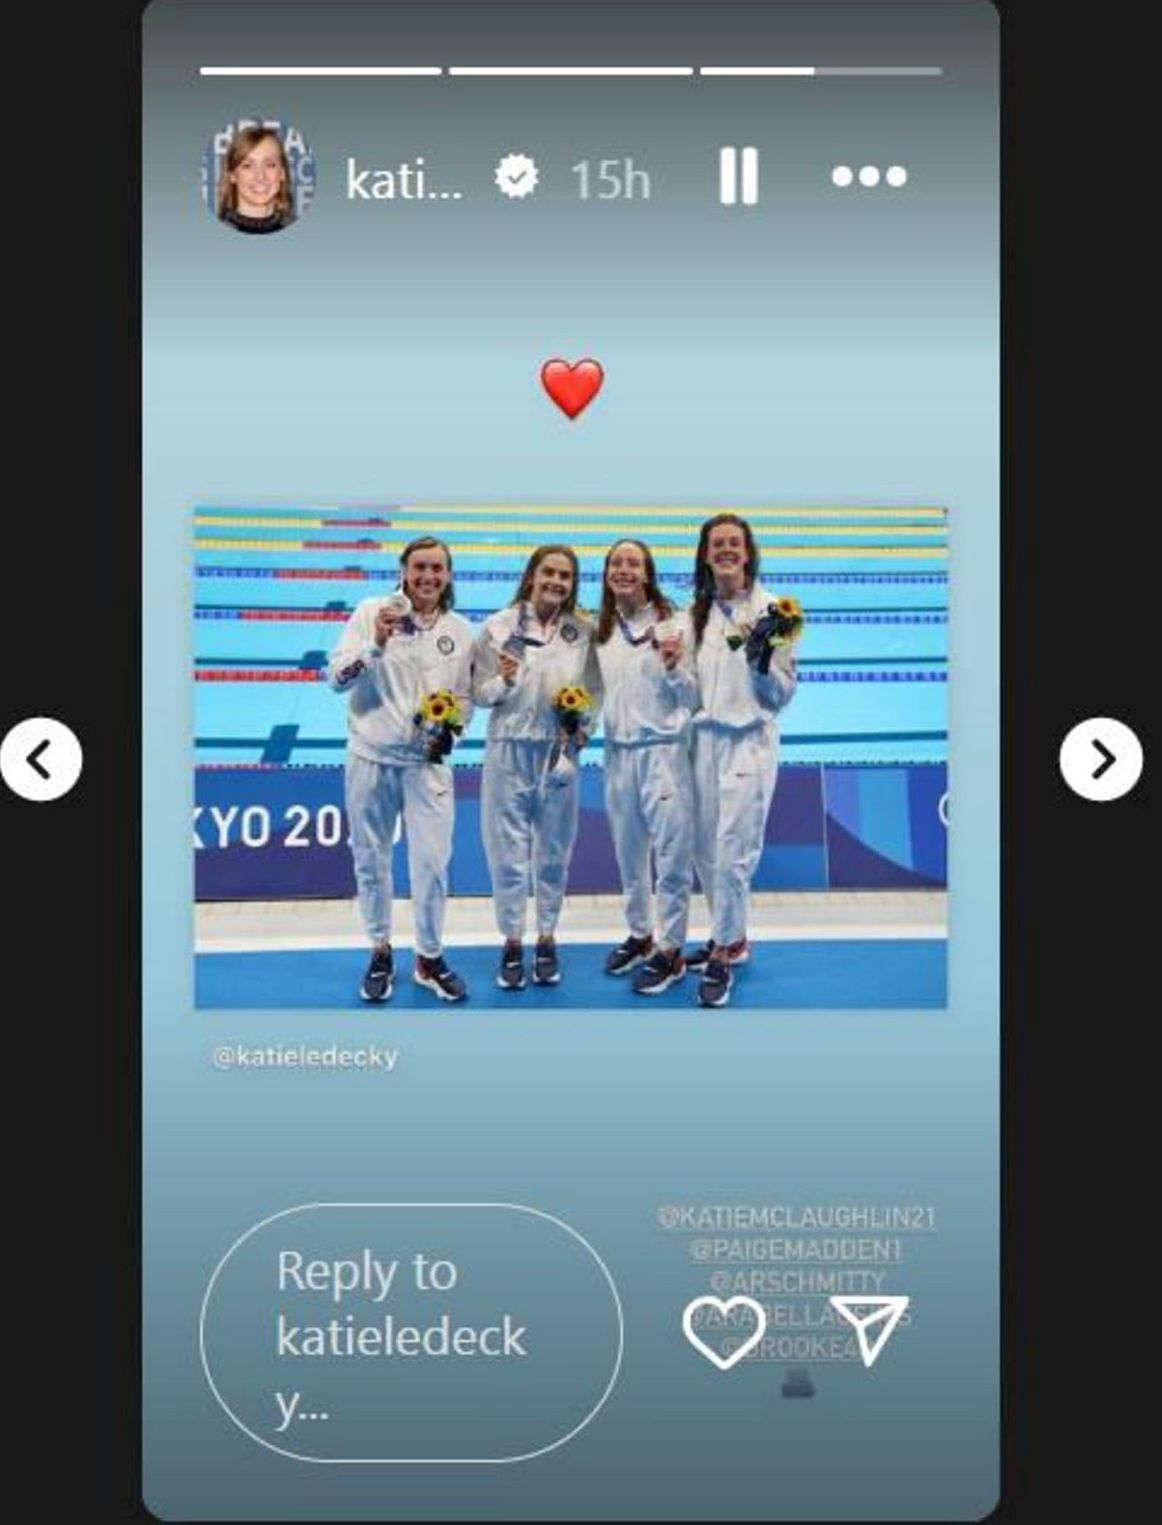 Katie Ledecky shares on her Instagram story